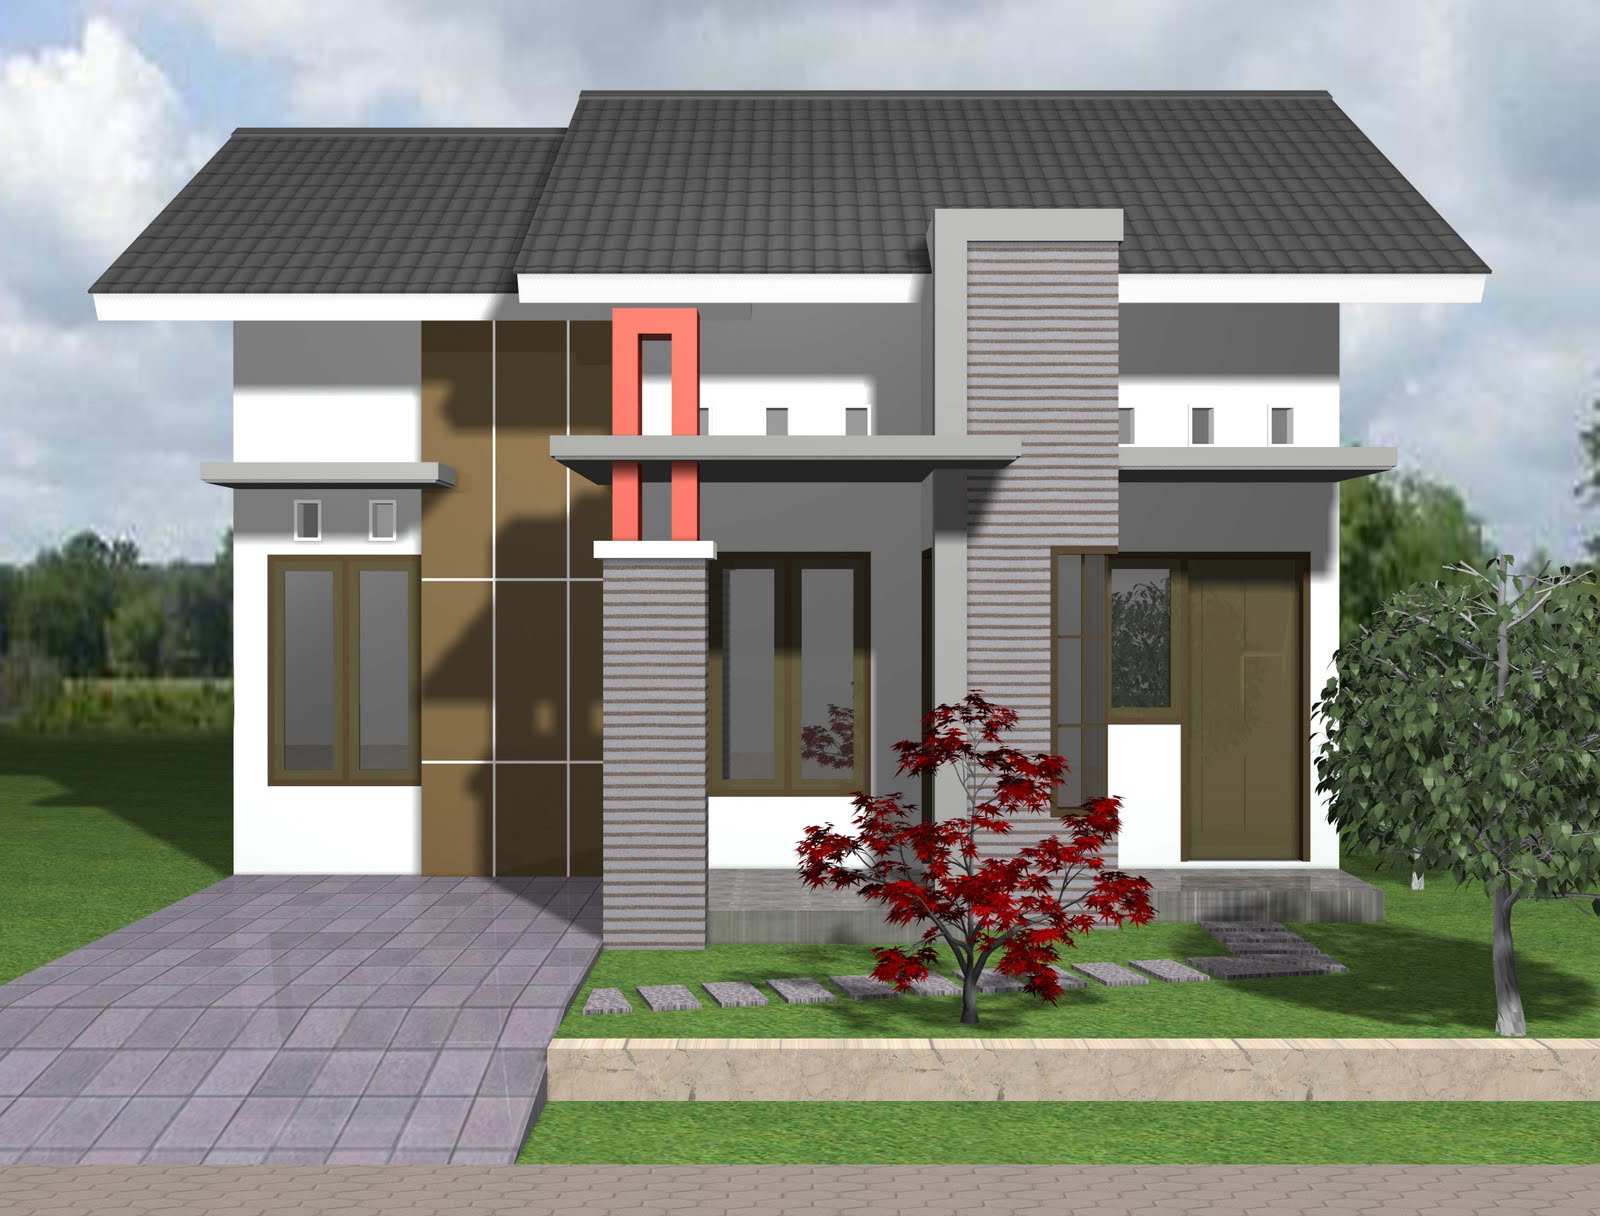 Koleksi 99 Model Rumah Sederhana Dan Biaya Terbaru Generasi Arsitek